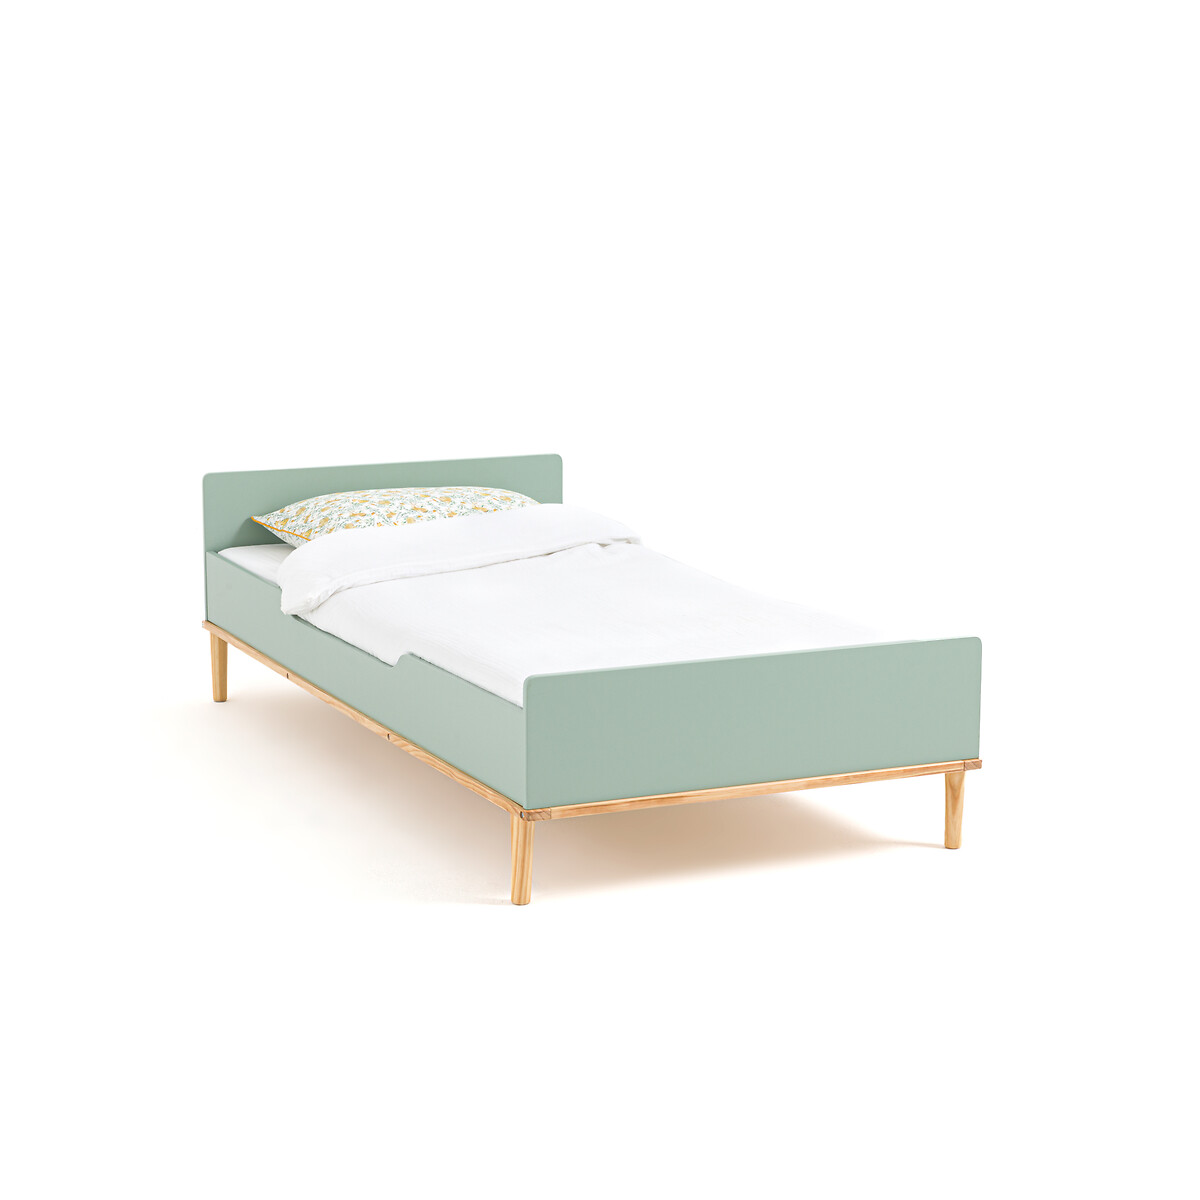 кровать детская quilda 90 x 190 см каштановый Кровать детская JIMI 90 x 190 см зеленый